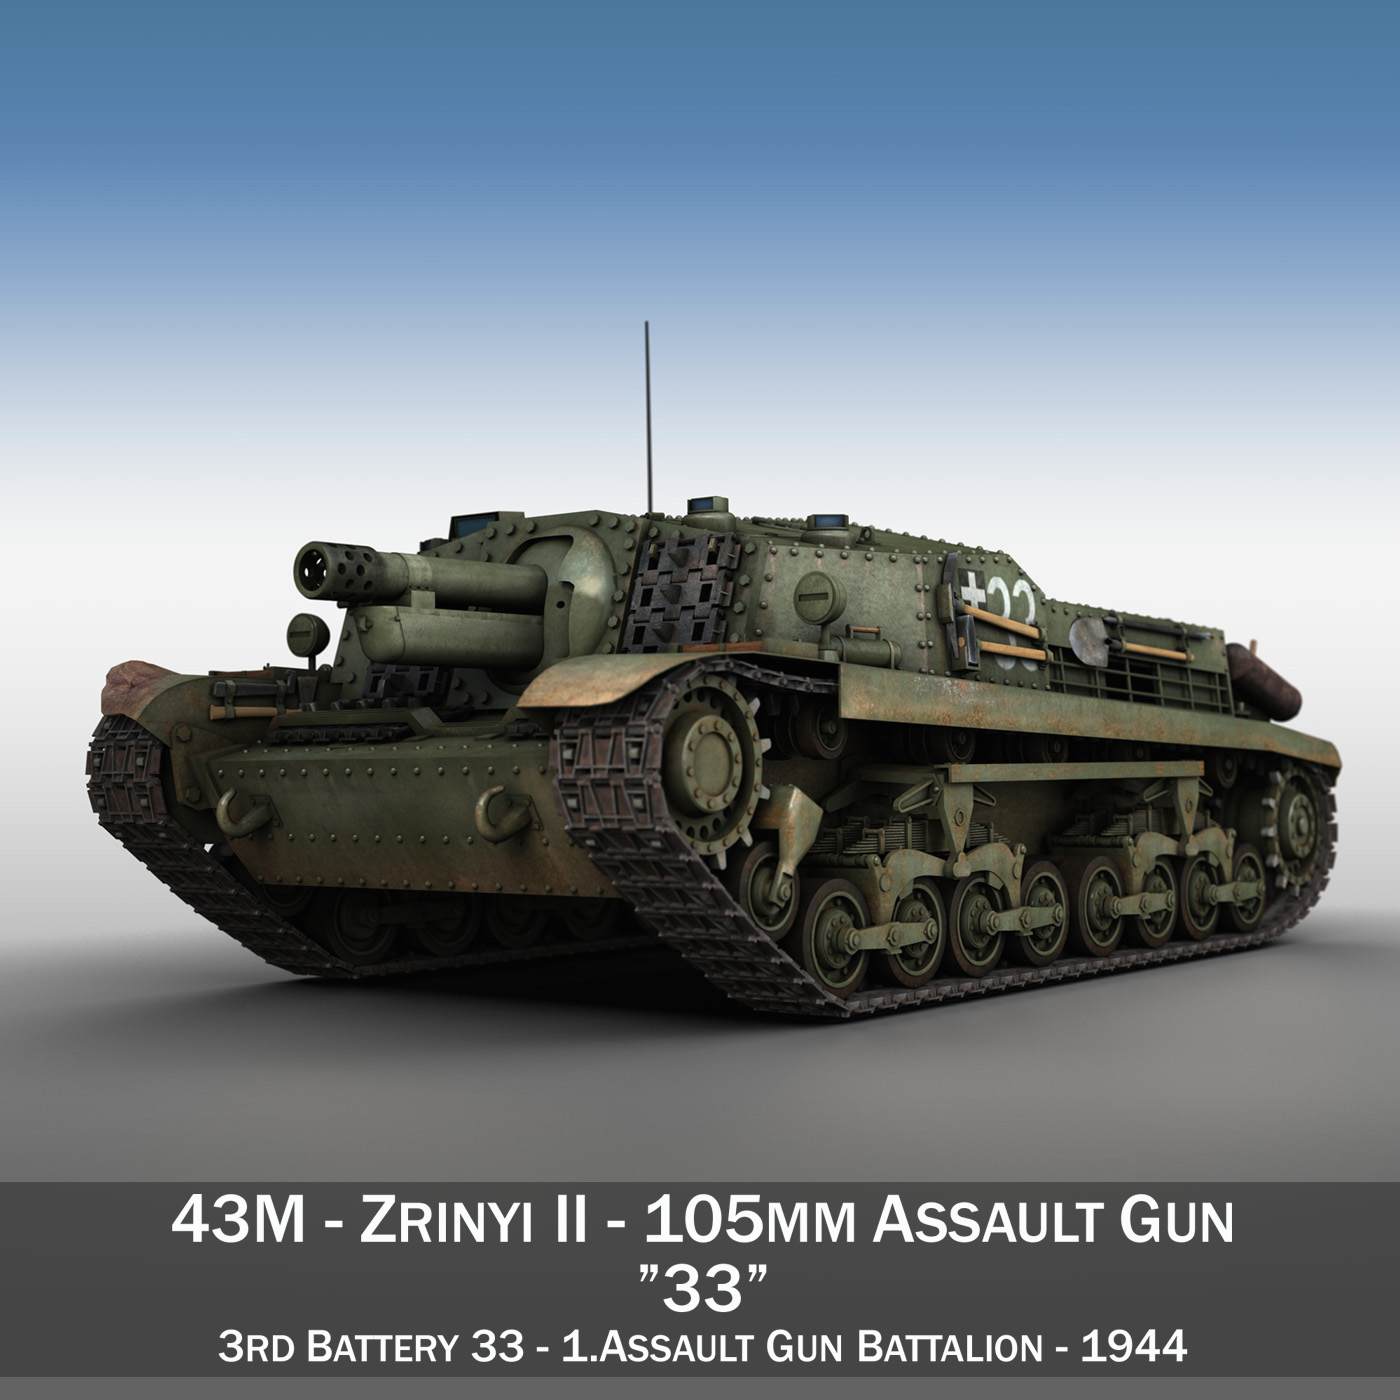 43m zrinyi ii – assault gun – 3rd battery 33 3d model 3ds fbx c4d lwo obj 278122